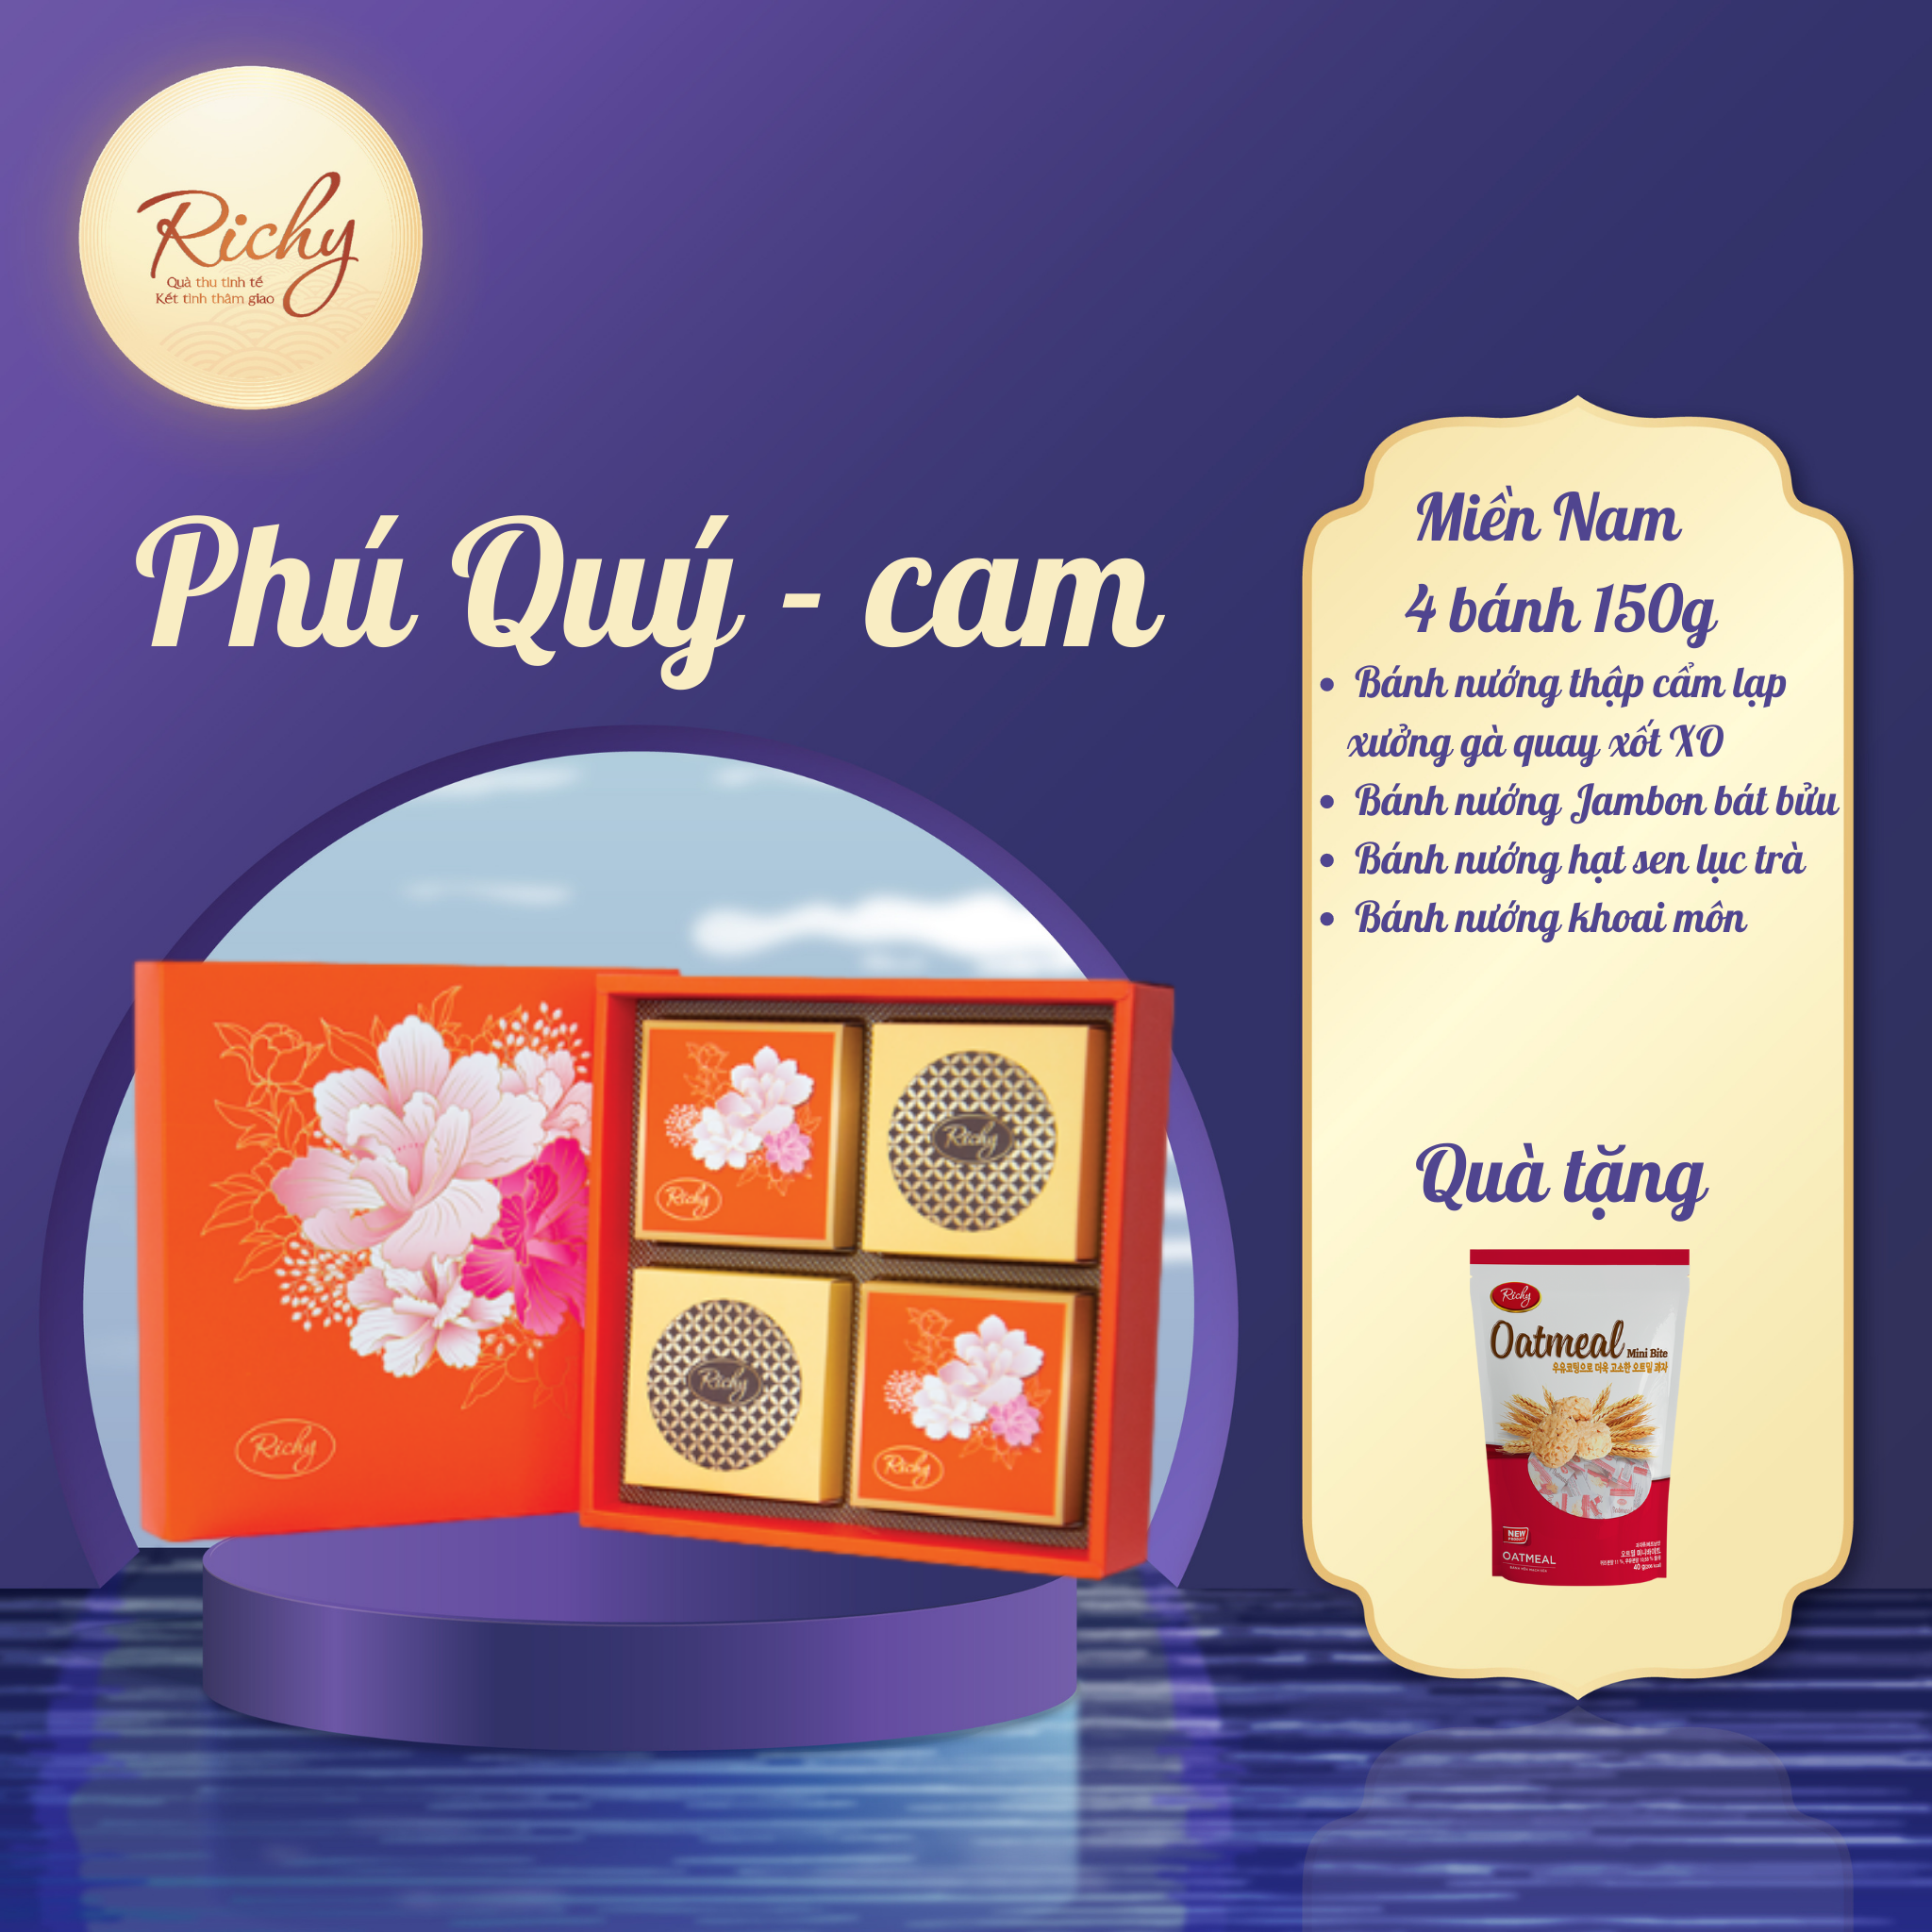 [MIỀN NAM] Bánh Trung Thu Richy hộp cao cấp - bộ Phú Quý cam